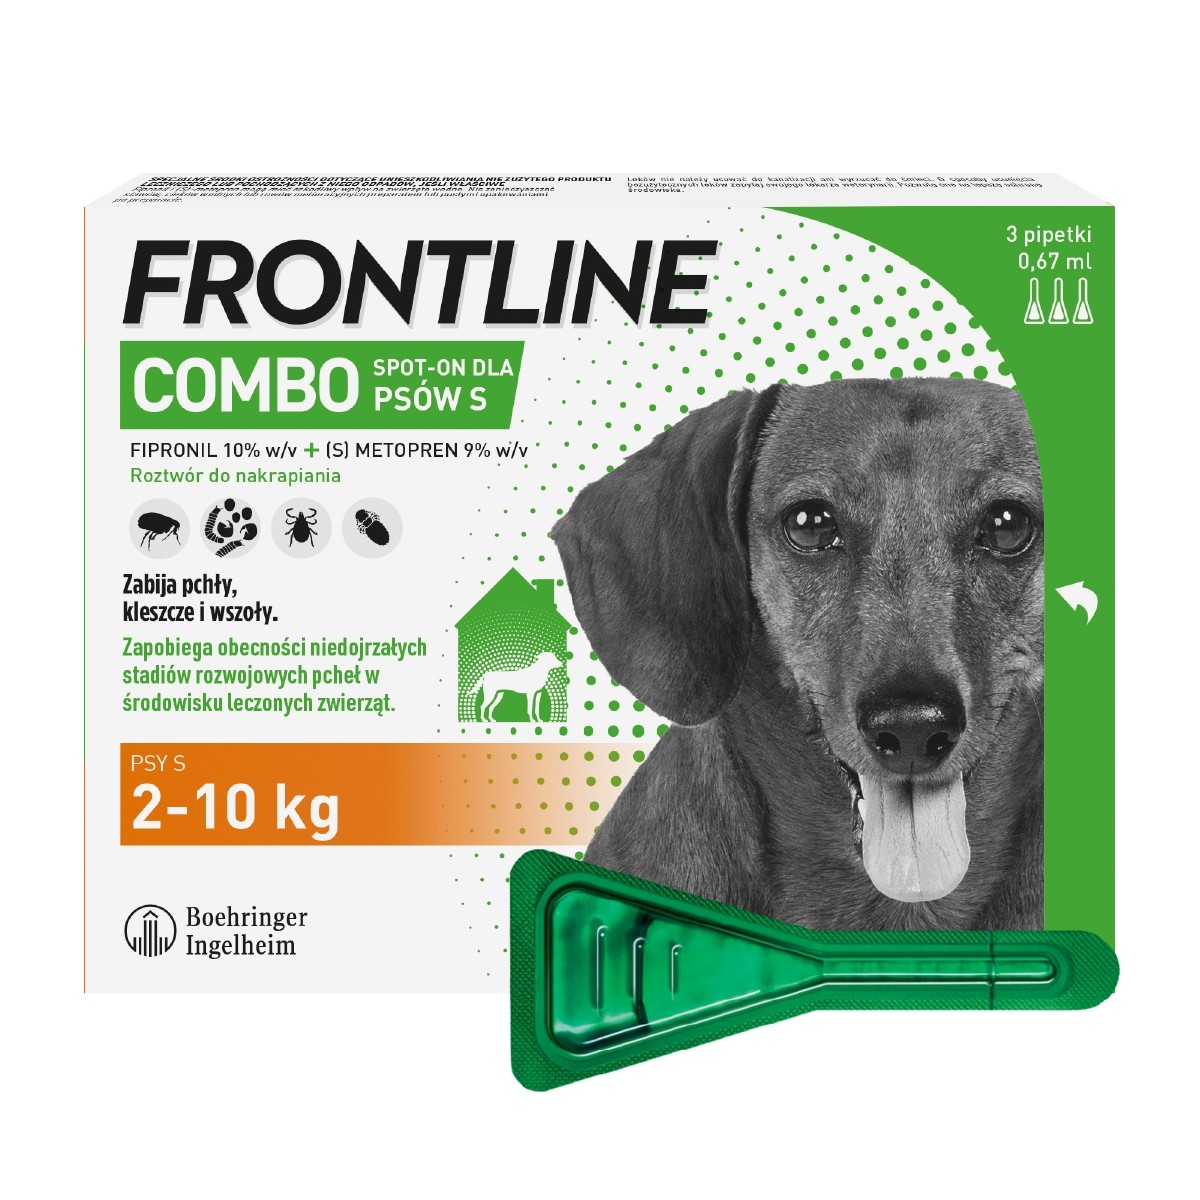 Preparaty lecznicze - Frontline Combo Spot-on krople na pchły i kleszcze S (2-10kg) 3szt.